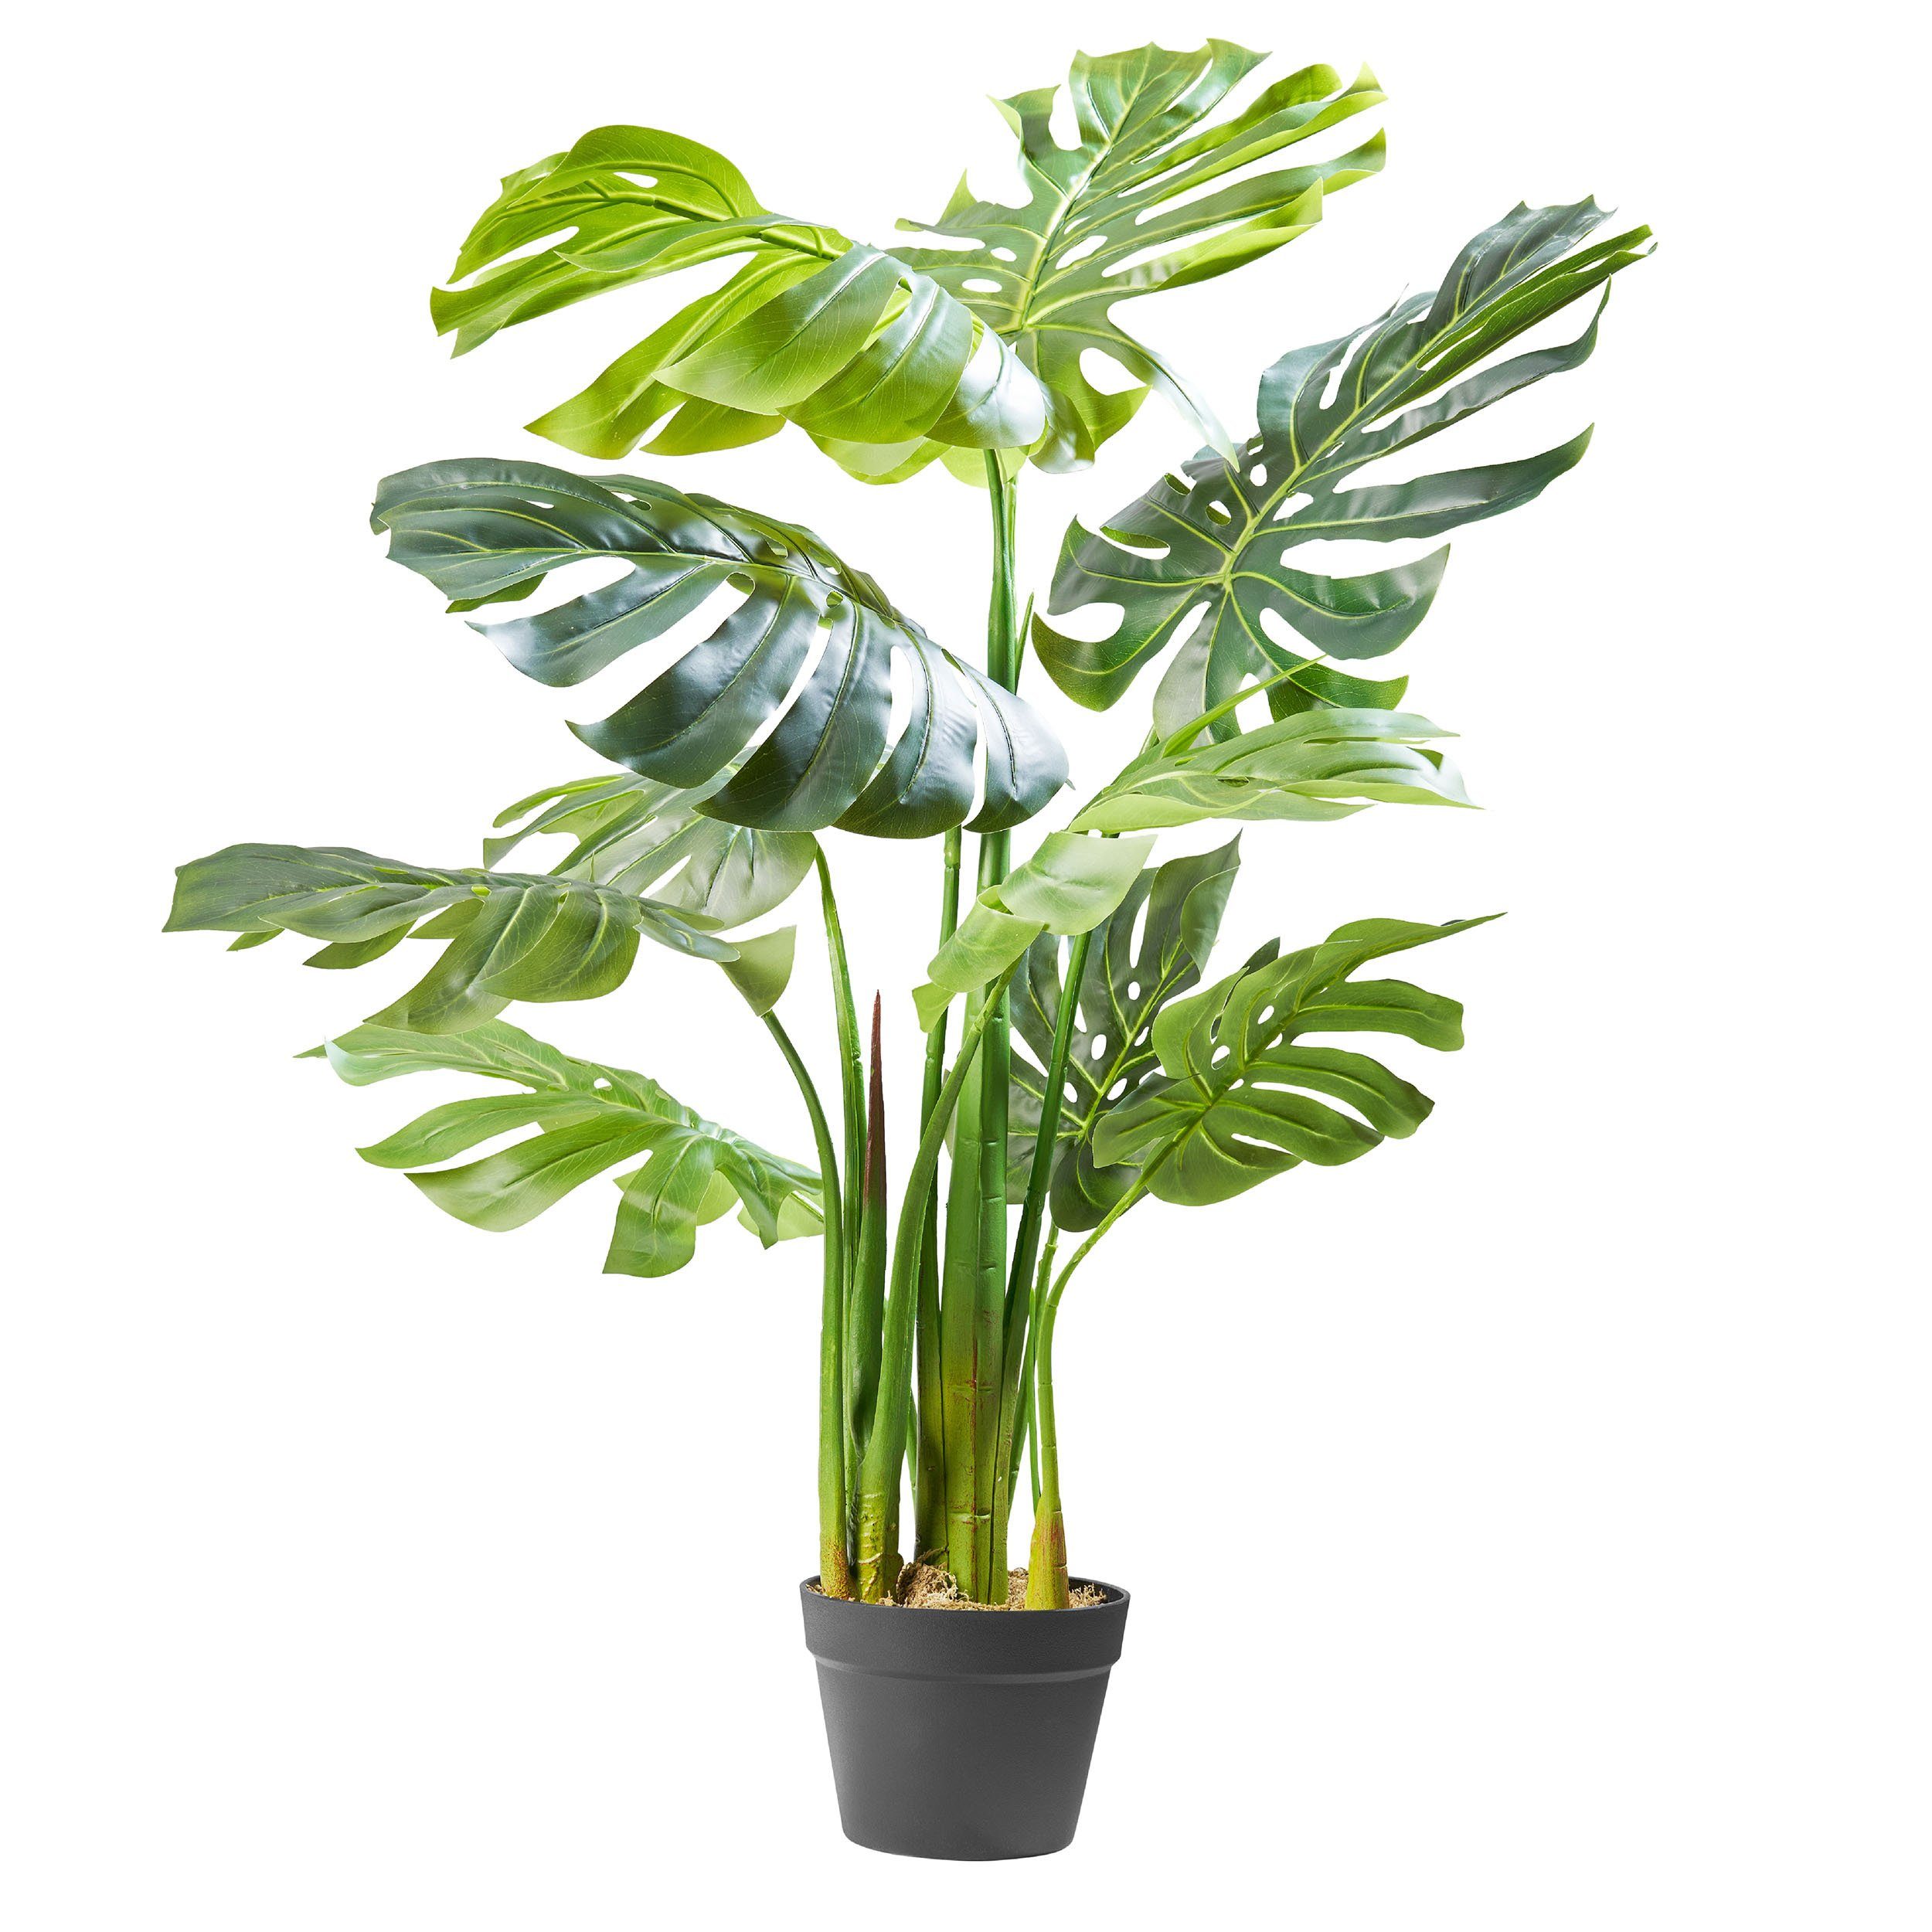 [Vertrauen zuerst, Qualität zuerst] Kunstpflanze Dekopflanze Dekopflanze, Amare home, cm 110 Höhe